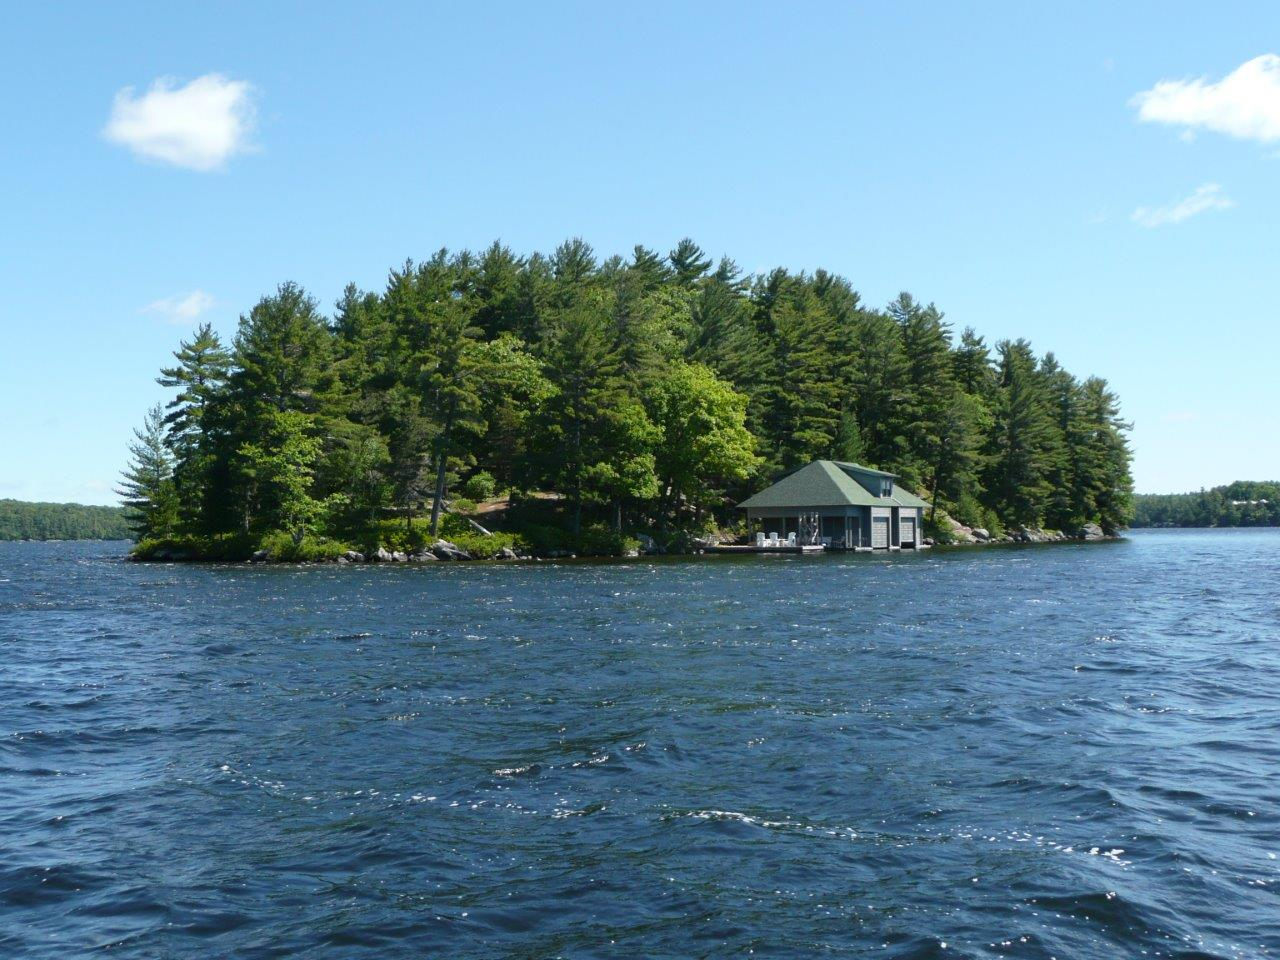 One of many island cottages on Lake Rosseau, Muskoka, Ontario